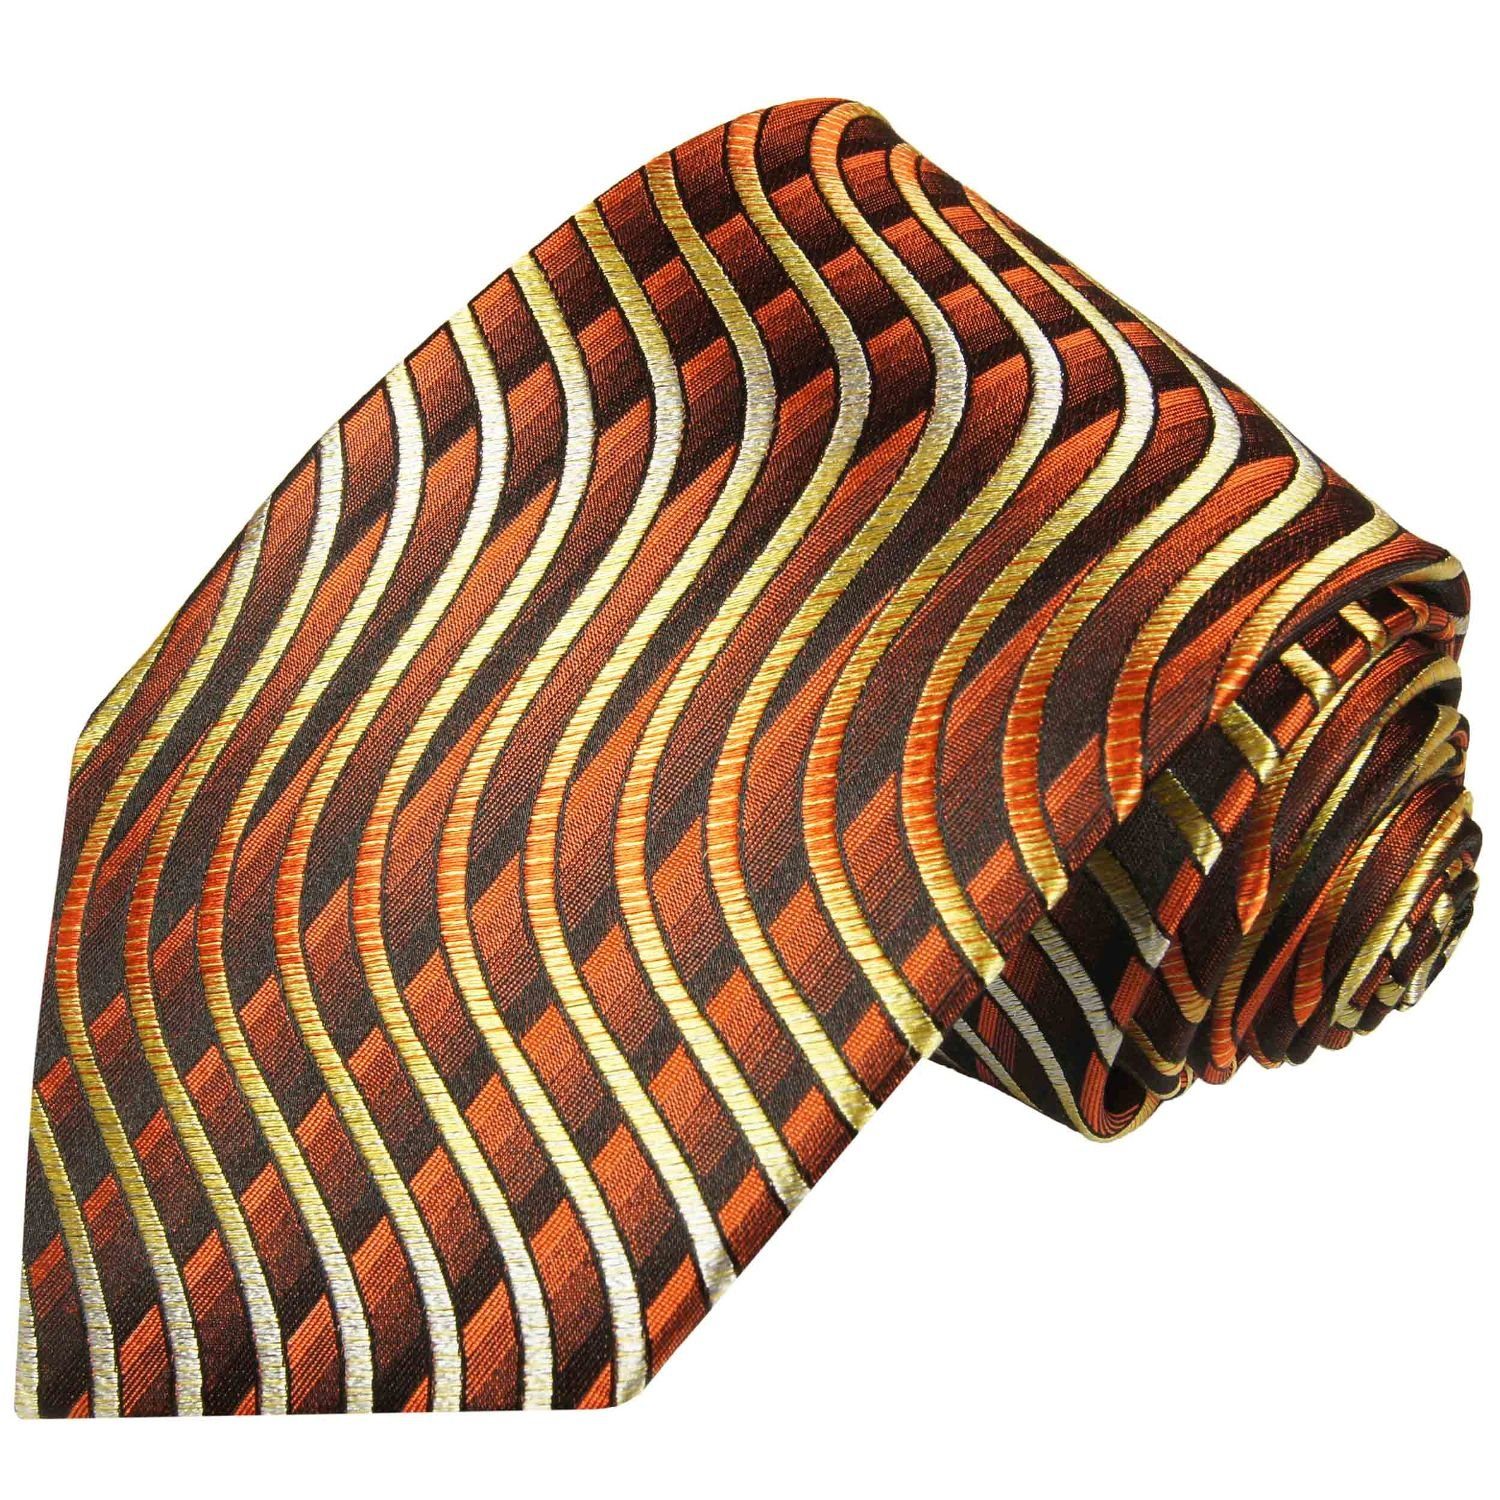 Paul Malone Krawatte Seidenkrawatte Herren Schlips modern Wellen Streifen 100% Seide Schmal (6cm), braun gelb 751